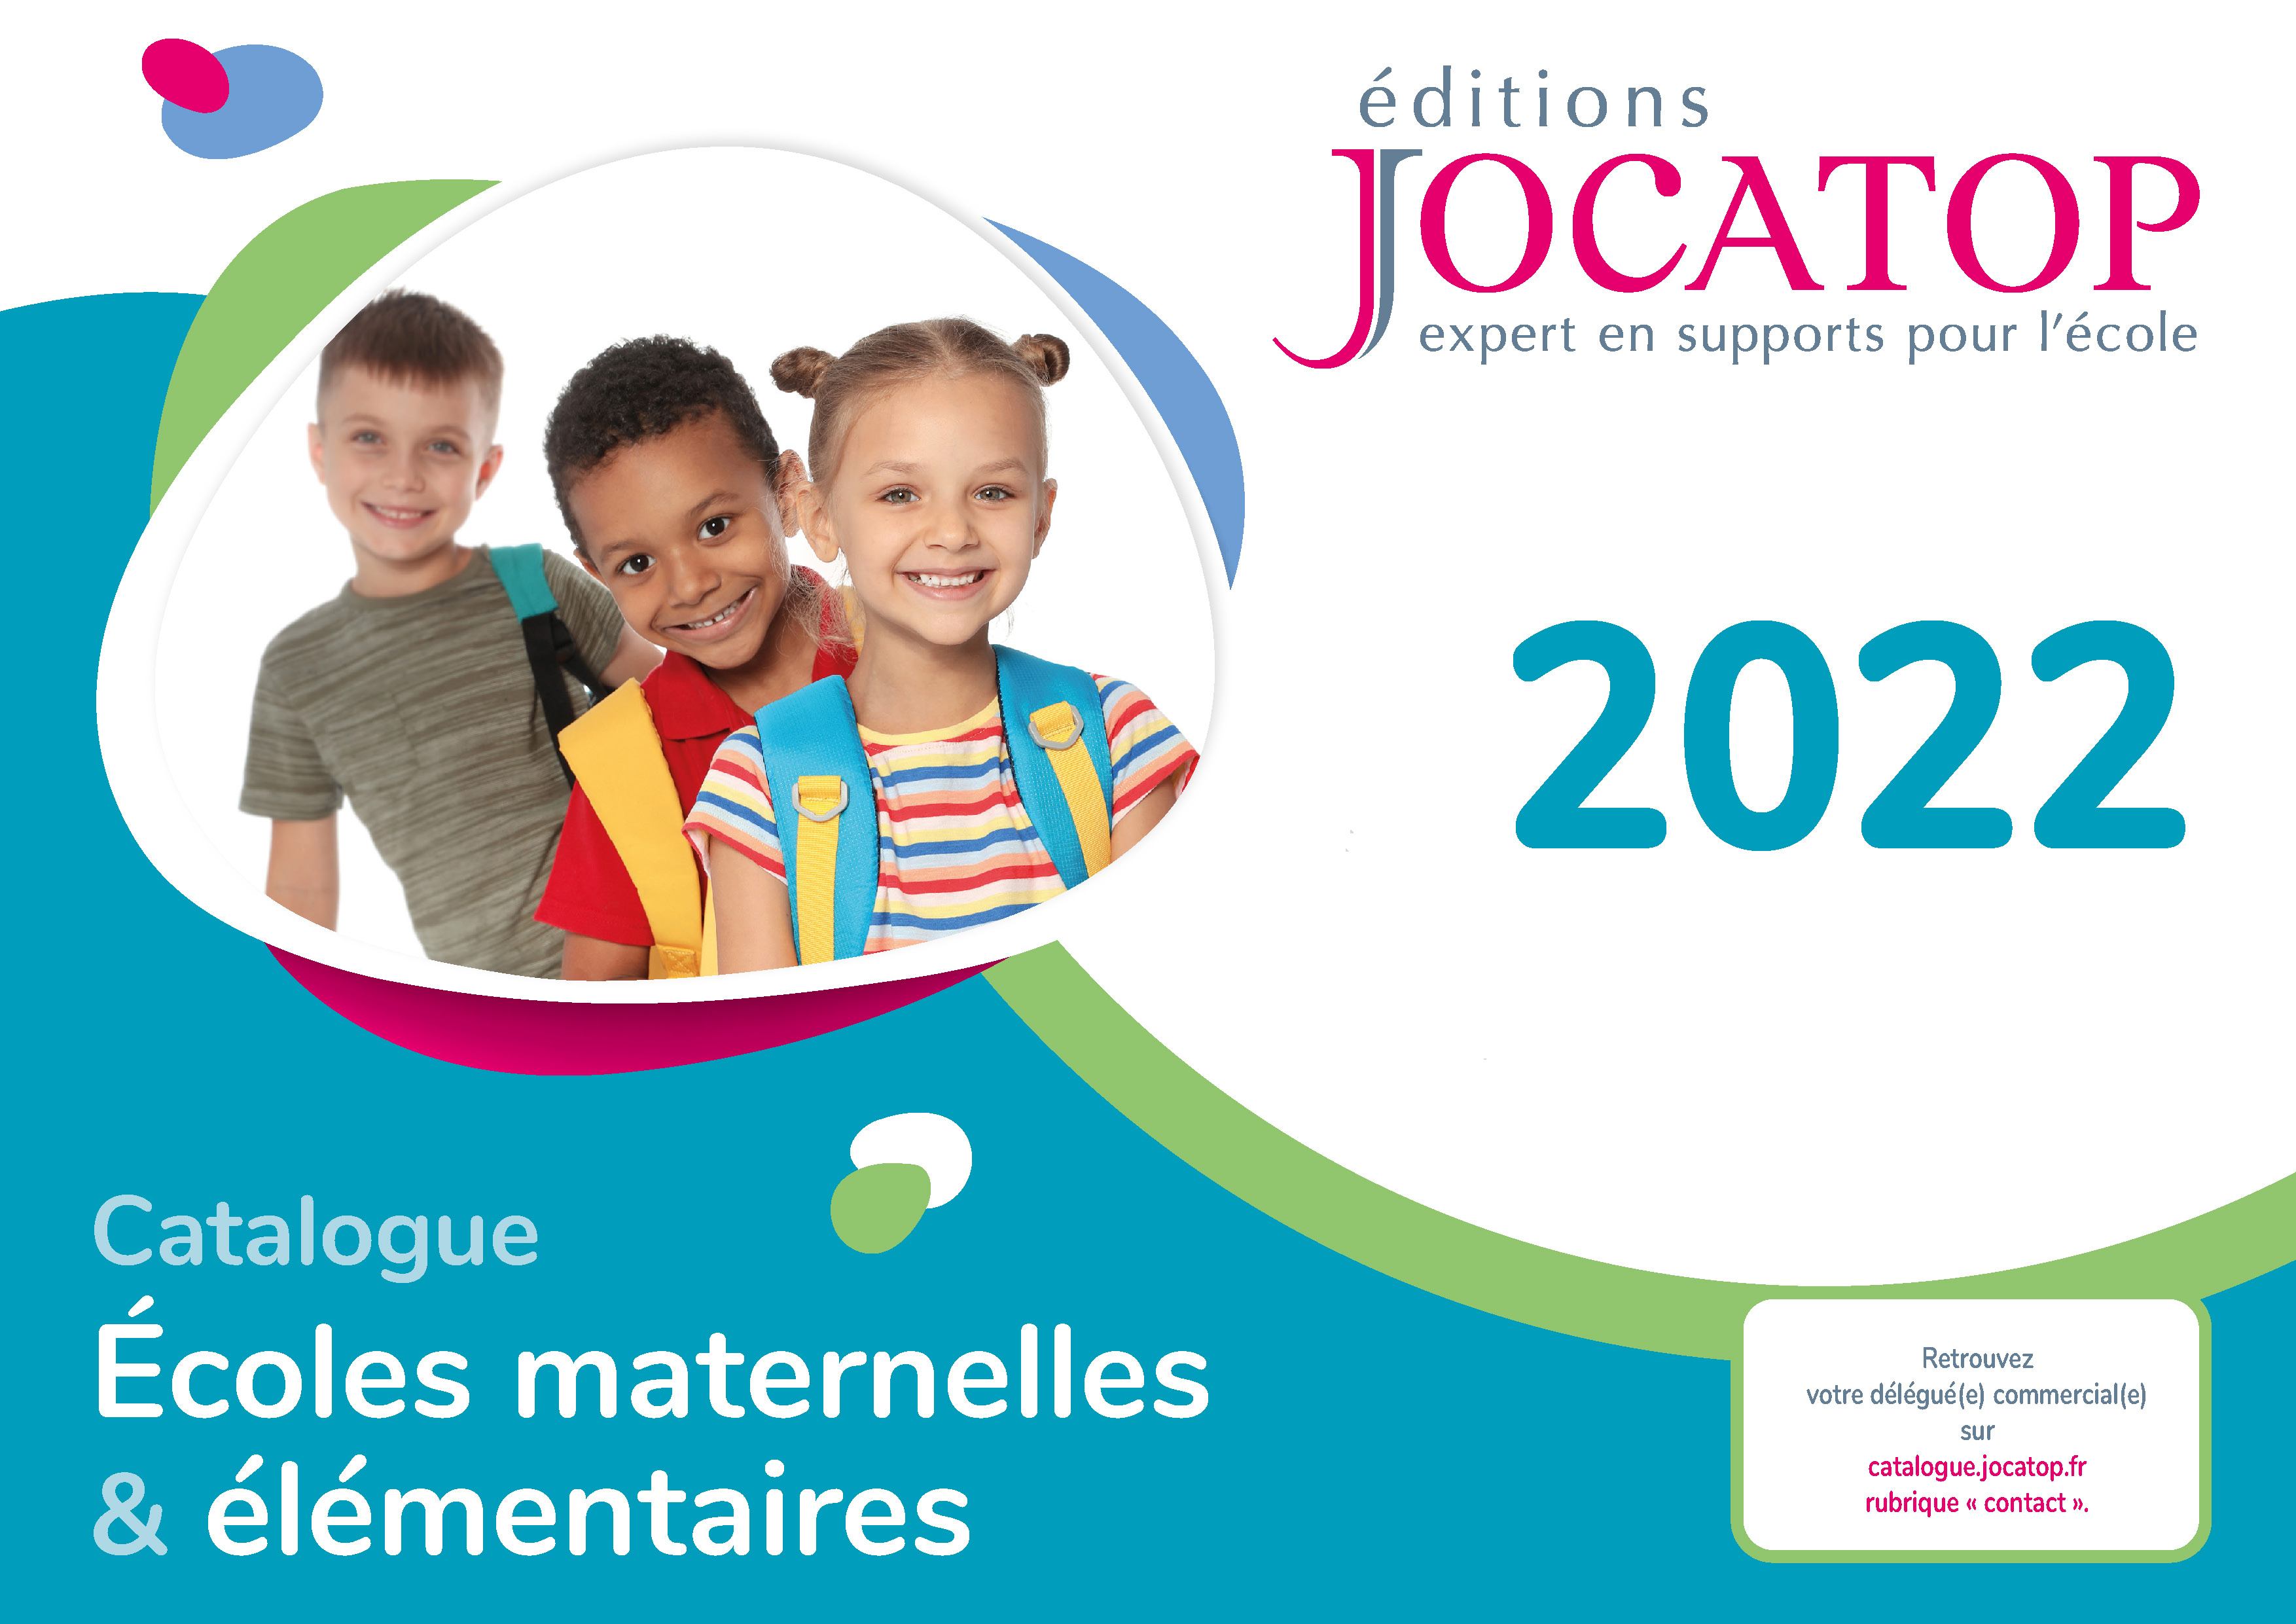 Catalogue 2022 • Editions Jocatop, concepteur d'outils pédagogiques